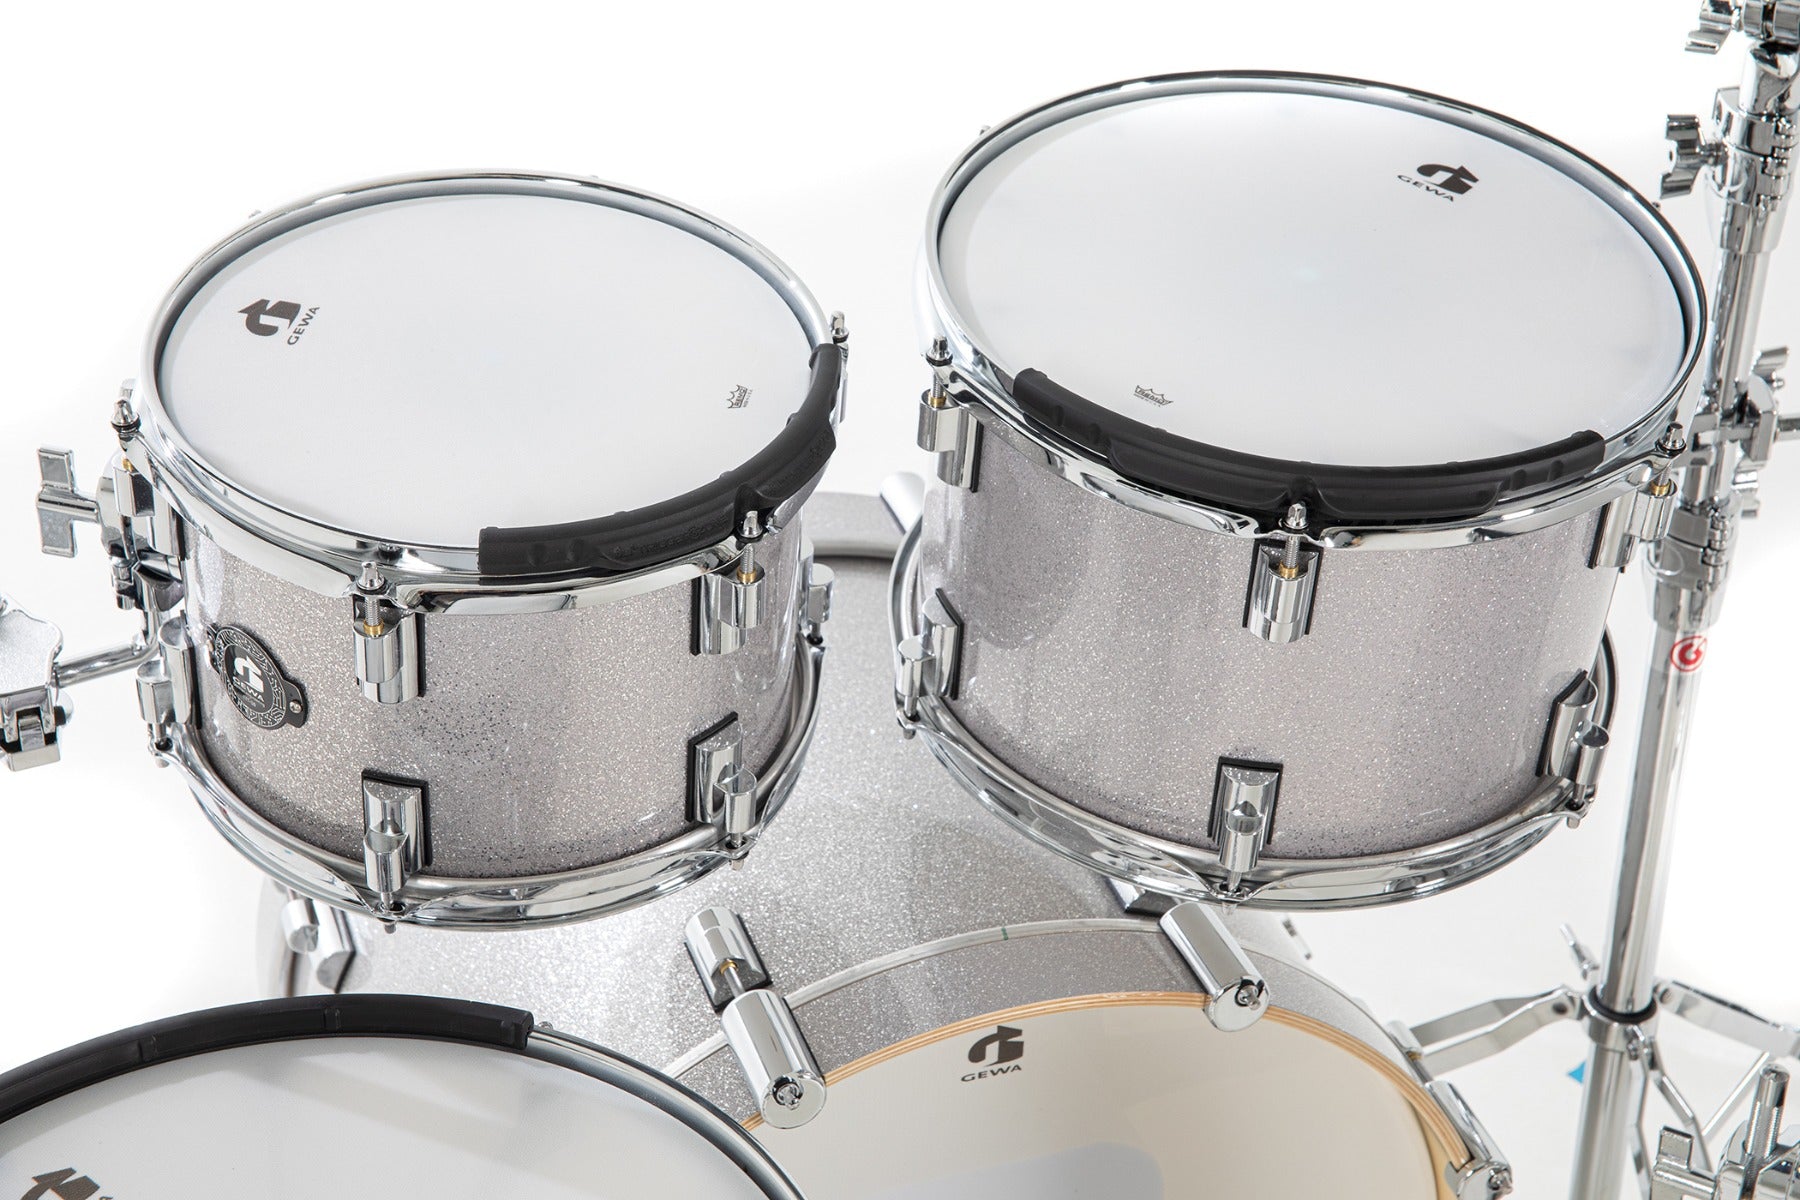 GEWA G9 Pro 5 SE Electronic Drum Set - Silver Sparkle, View 7